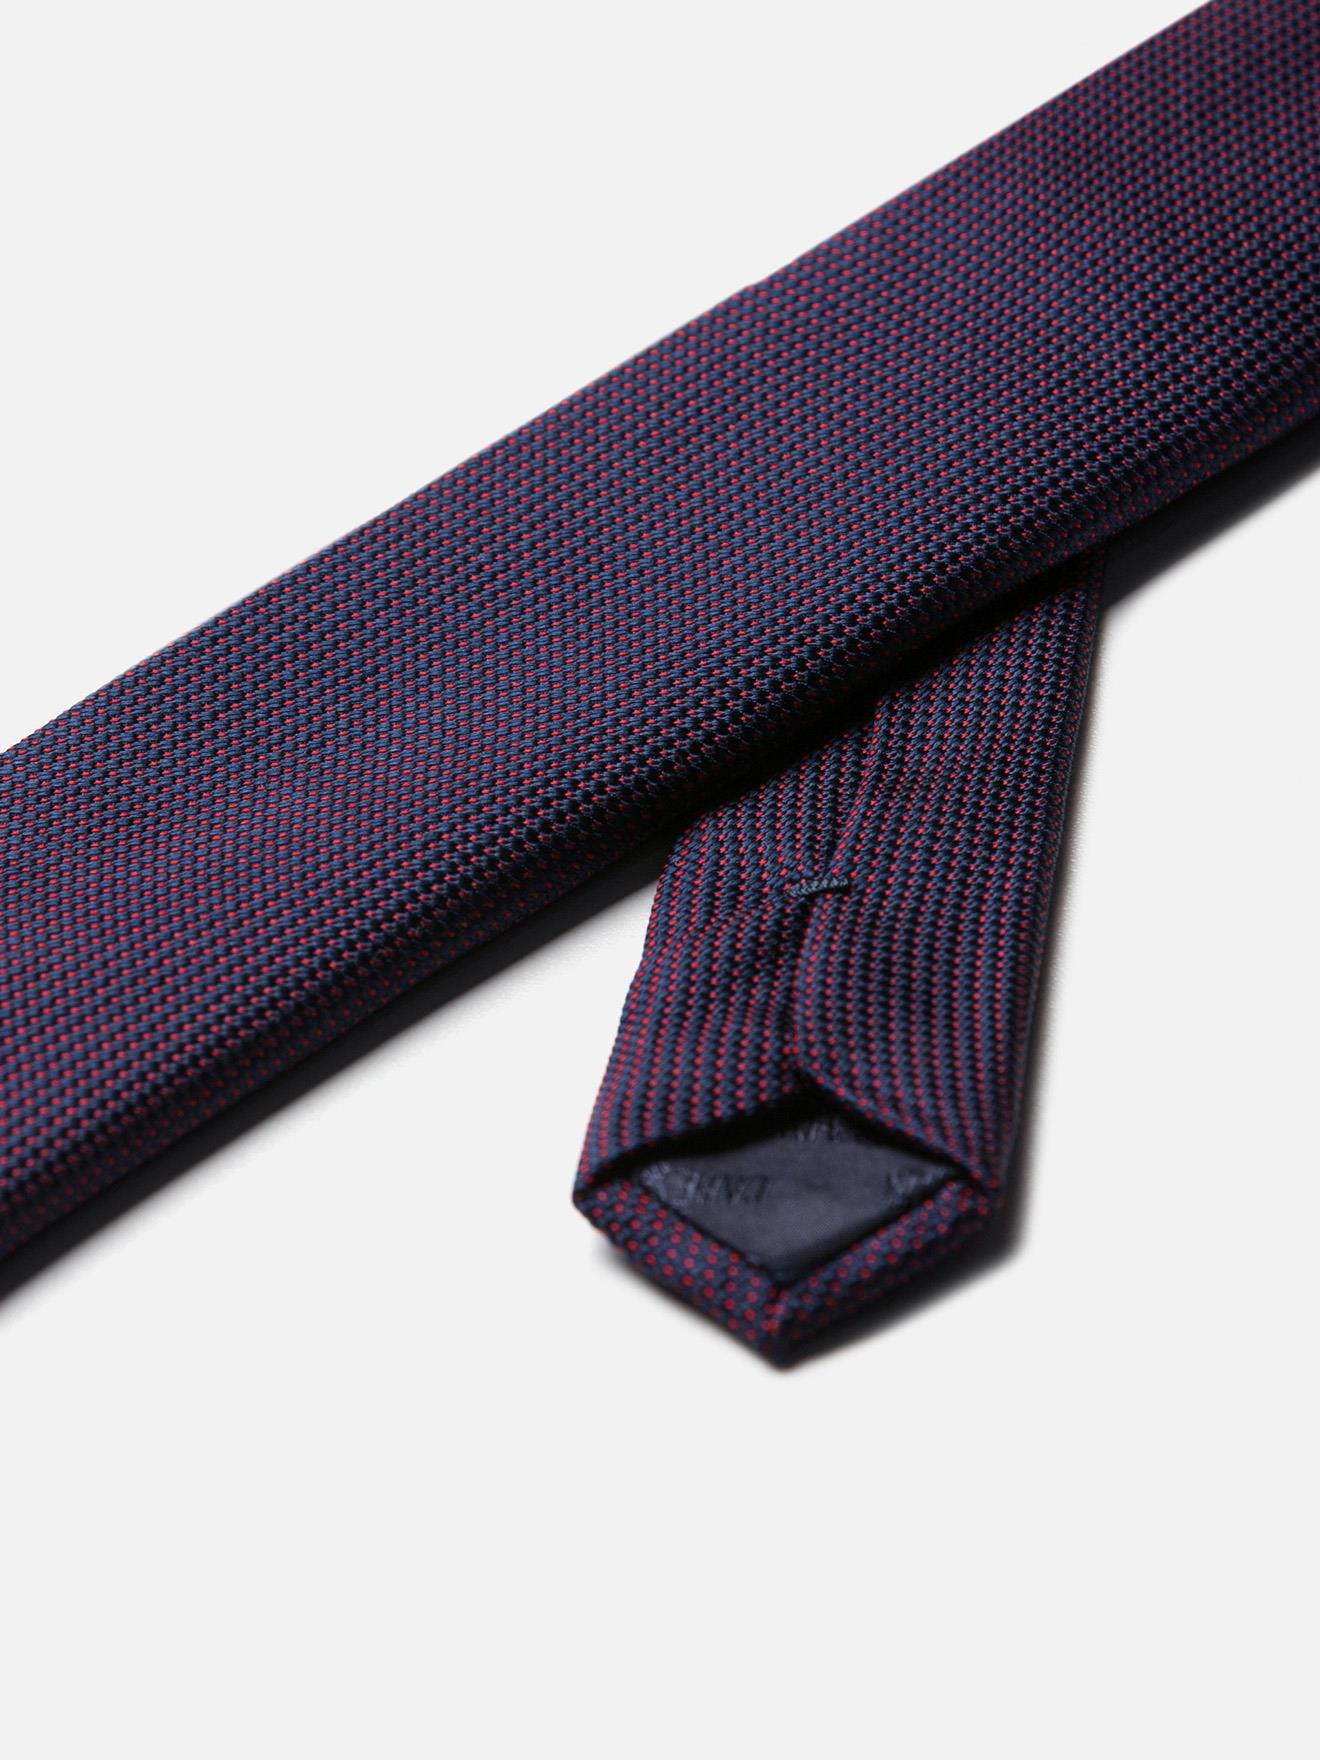 Cravate fine en soie marine natté rouge